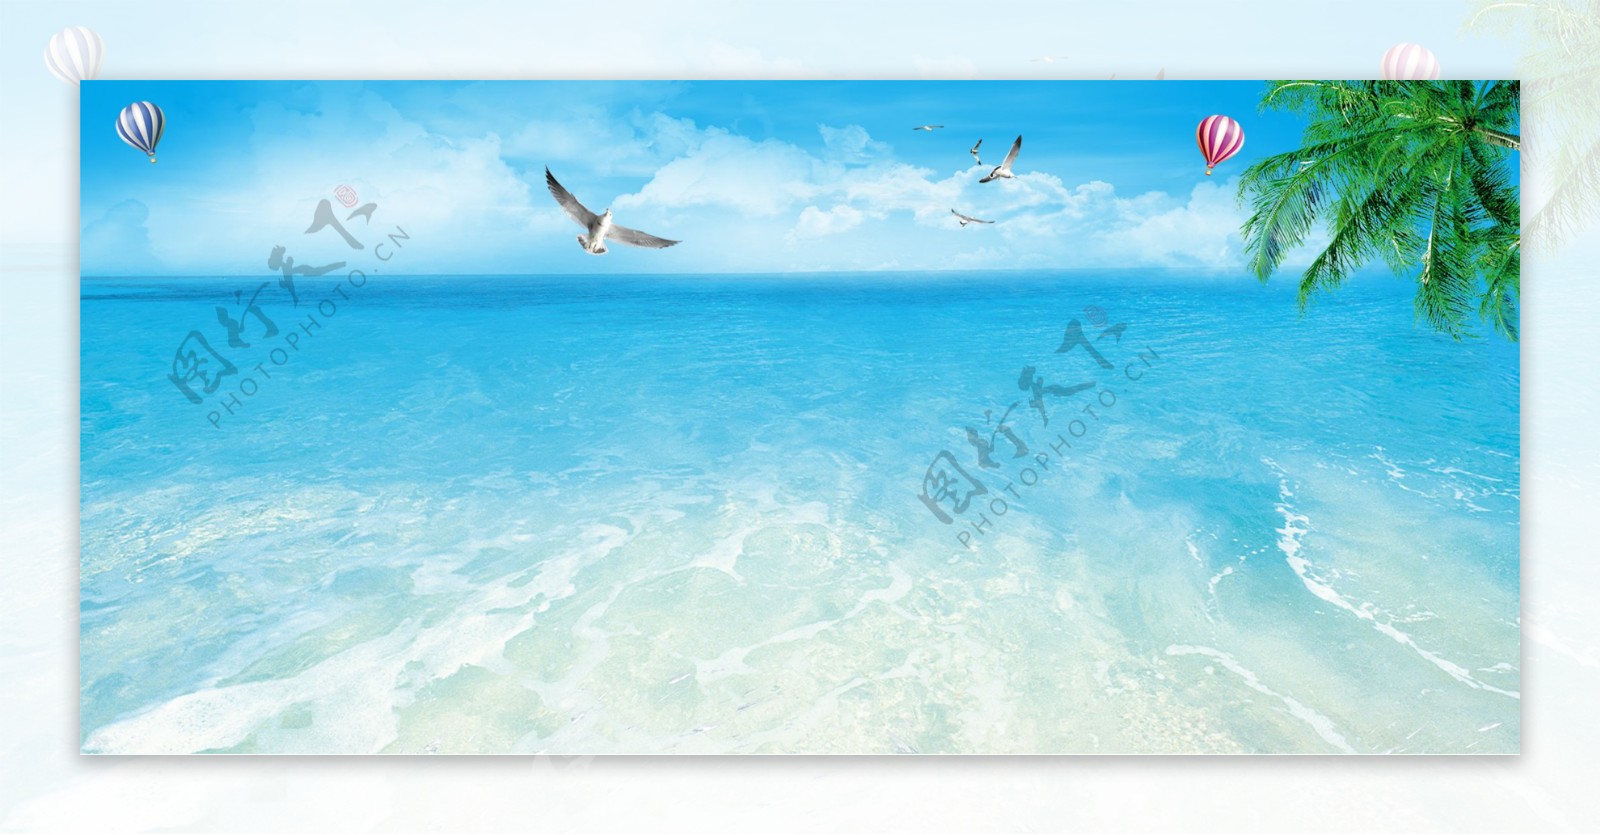 蓝色夏季海浪沙滩背景海报素材